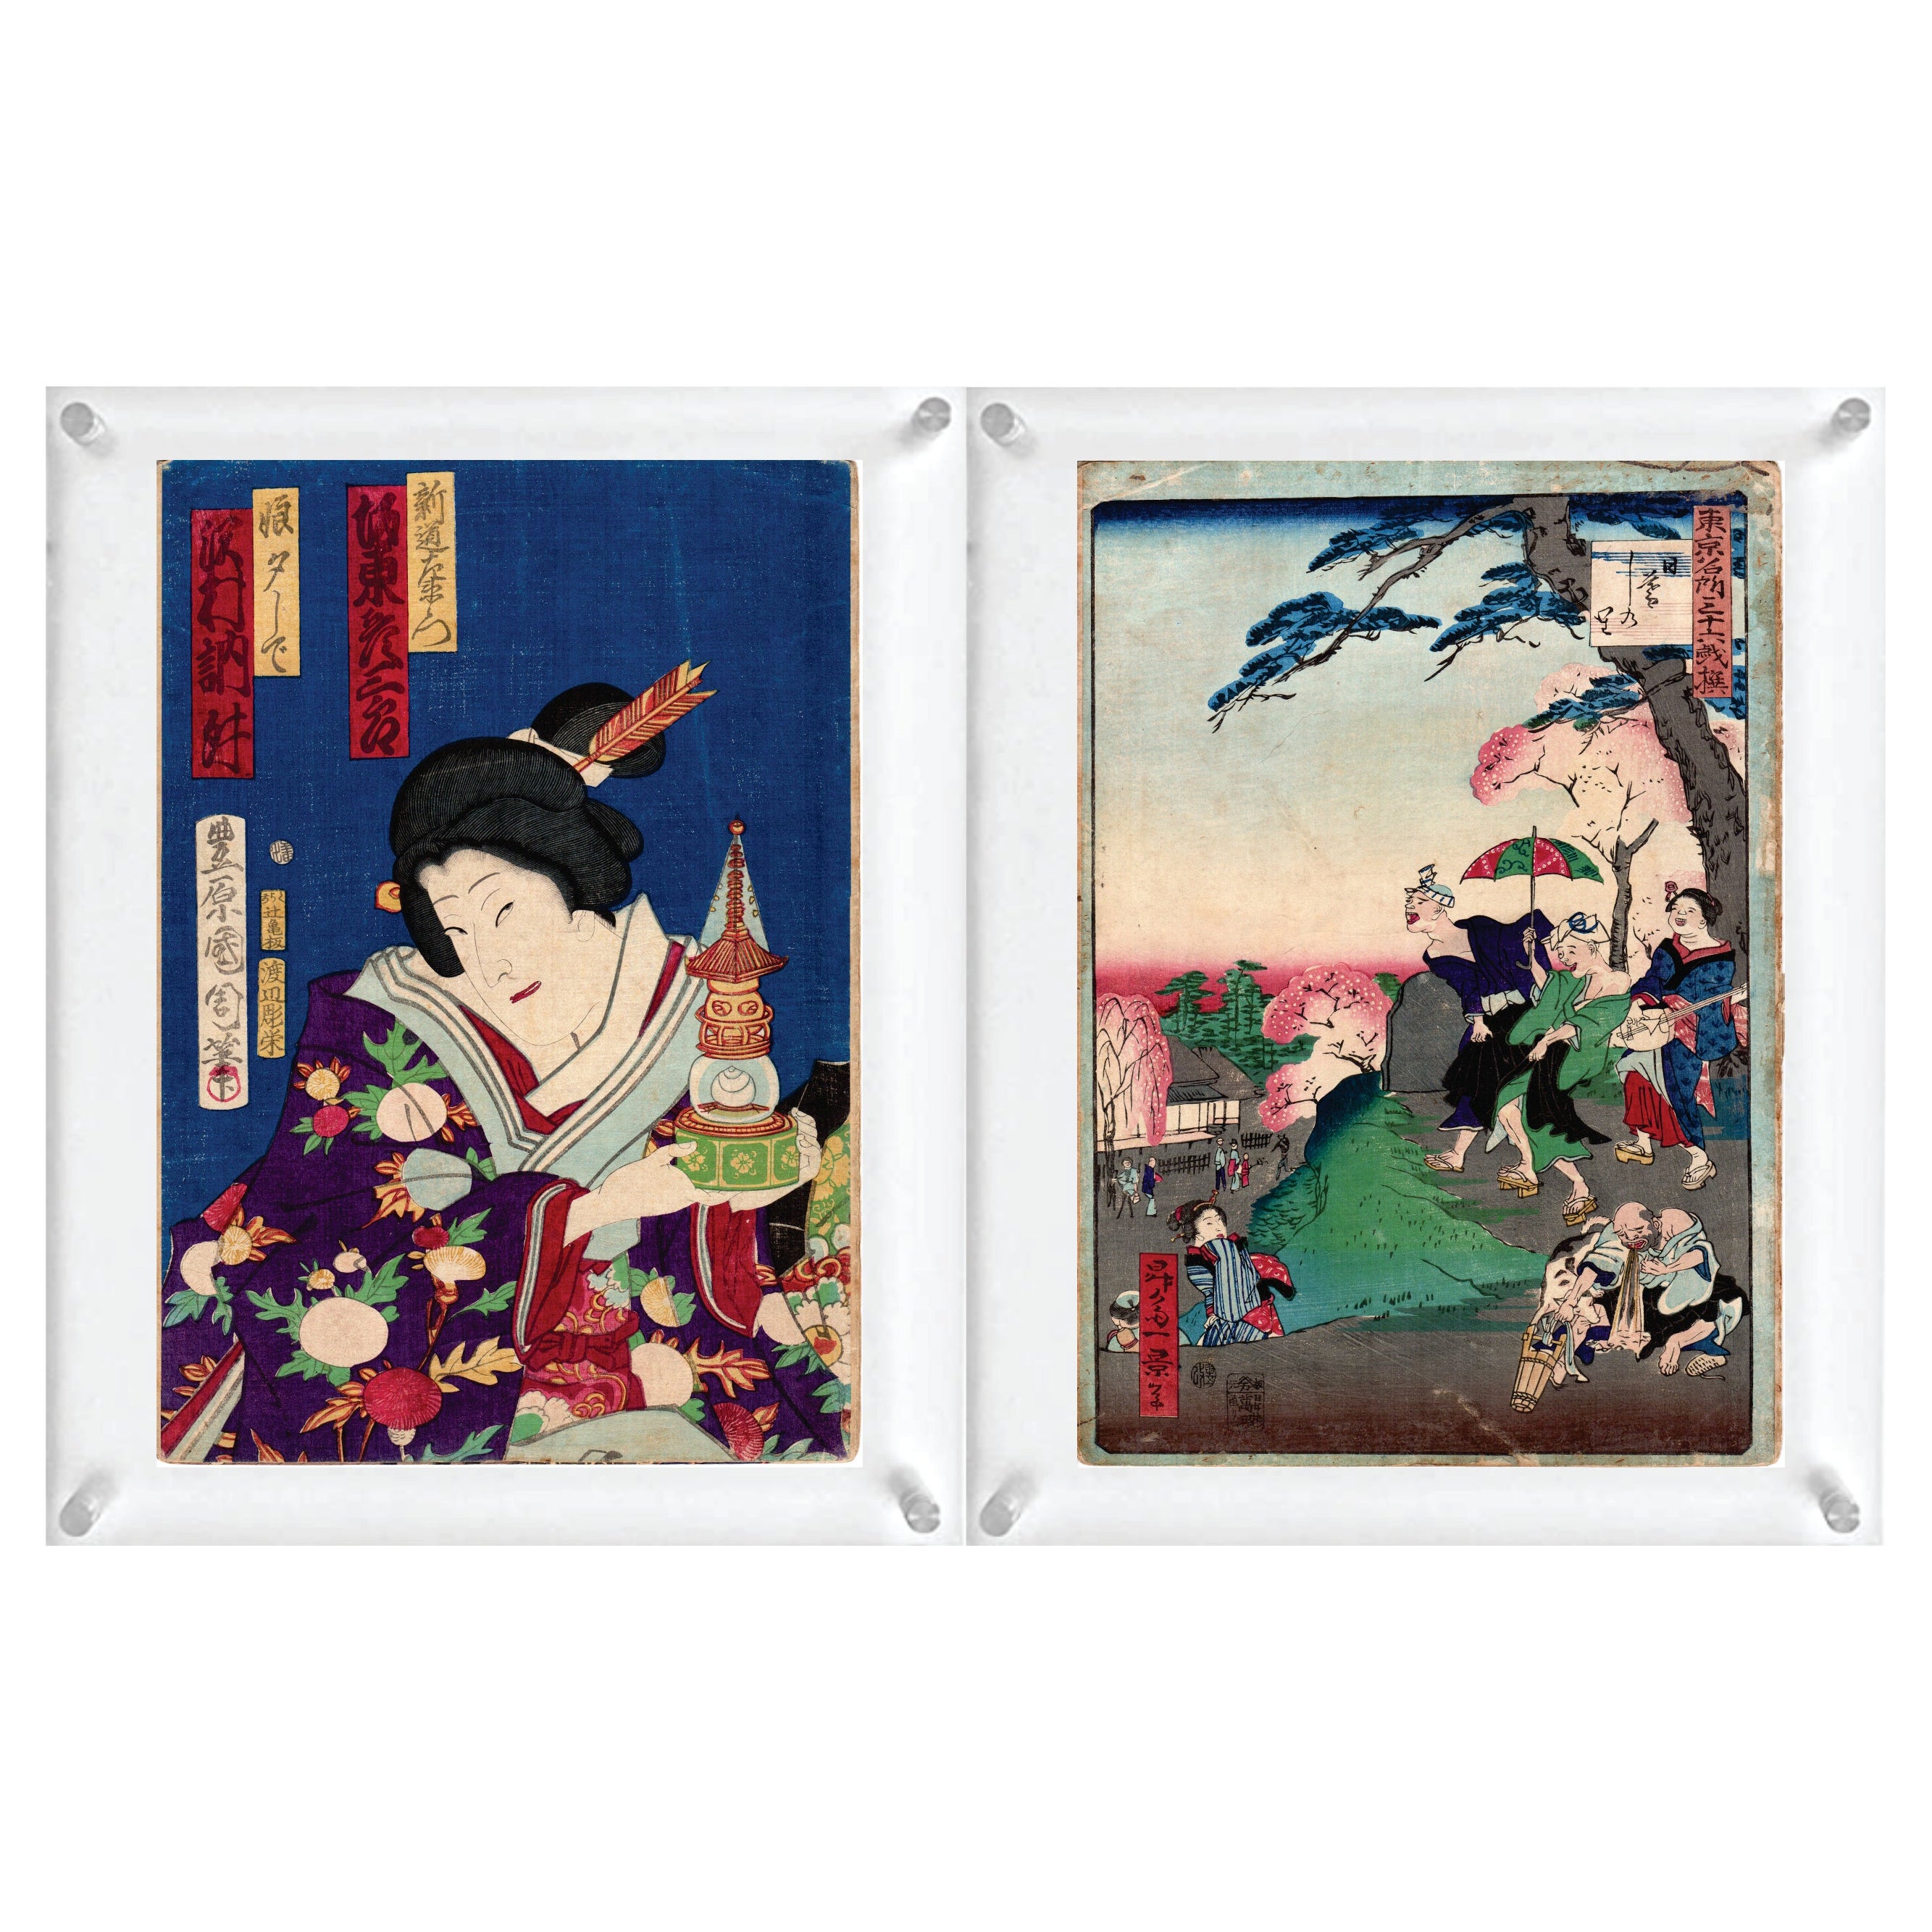 2 japanische Holzschnittdrucke „Double-Side“ von Toyohara Kunichika und Shosai Ikkei